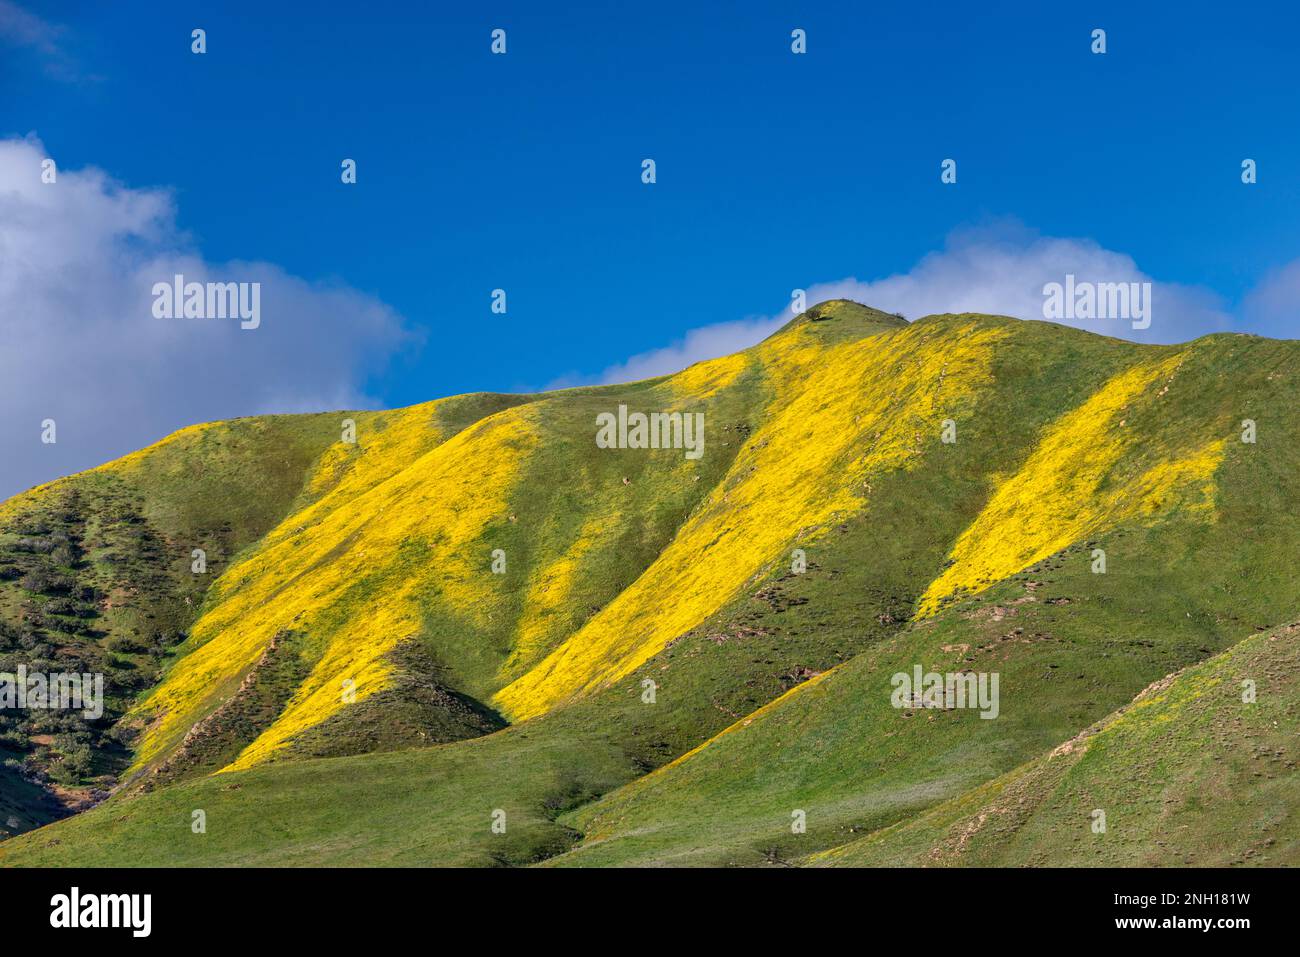 Hügel bedeckt mit hügeligen Gänseblümchen Anfang März, Caliente Range, Blick von der Soda Lake Road, Carrizo Plain National Monument, Kalifornien, USA Stockfoto